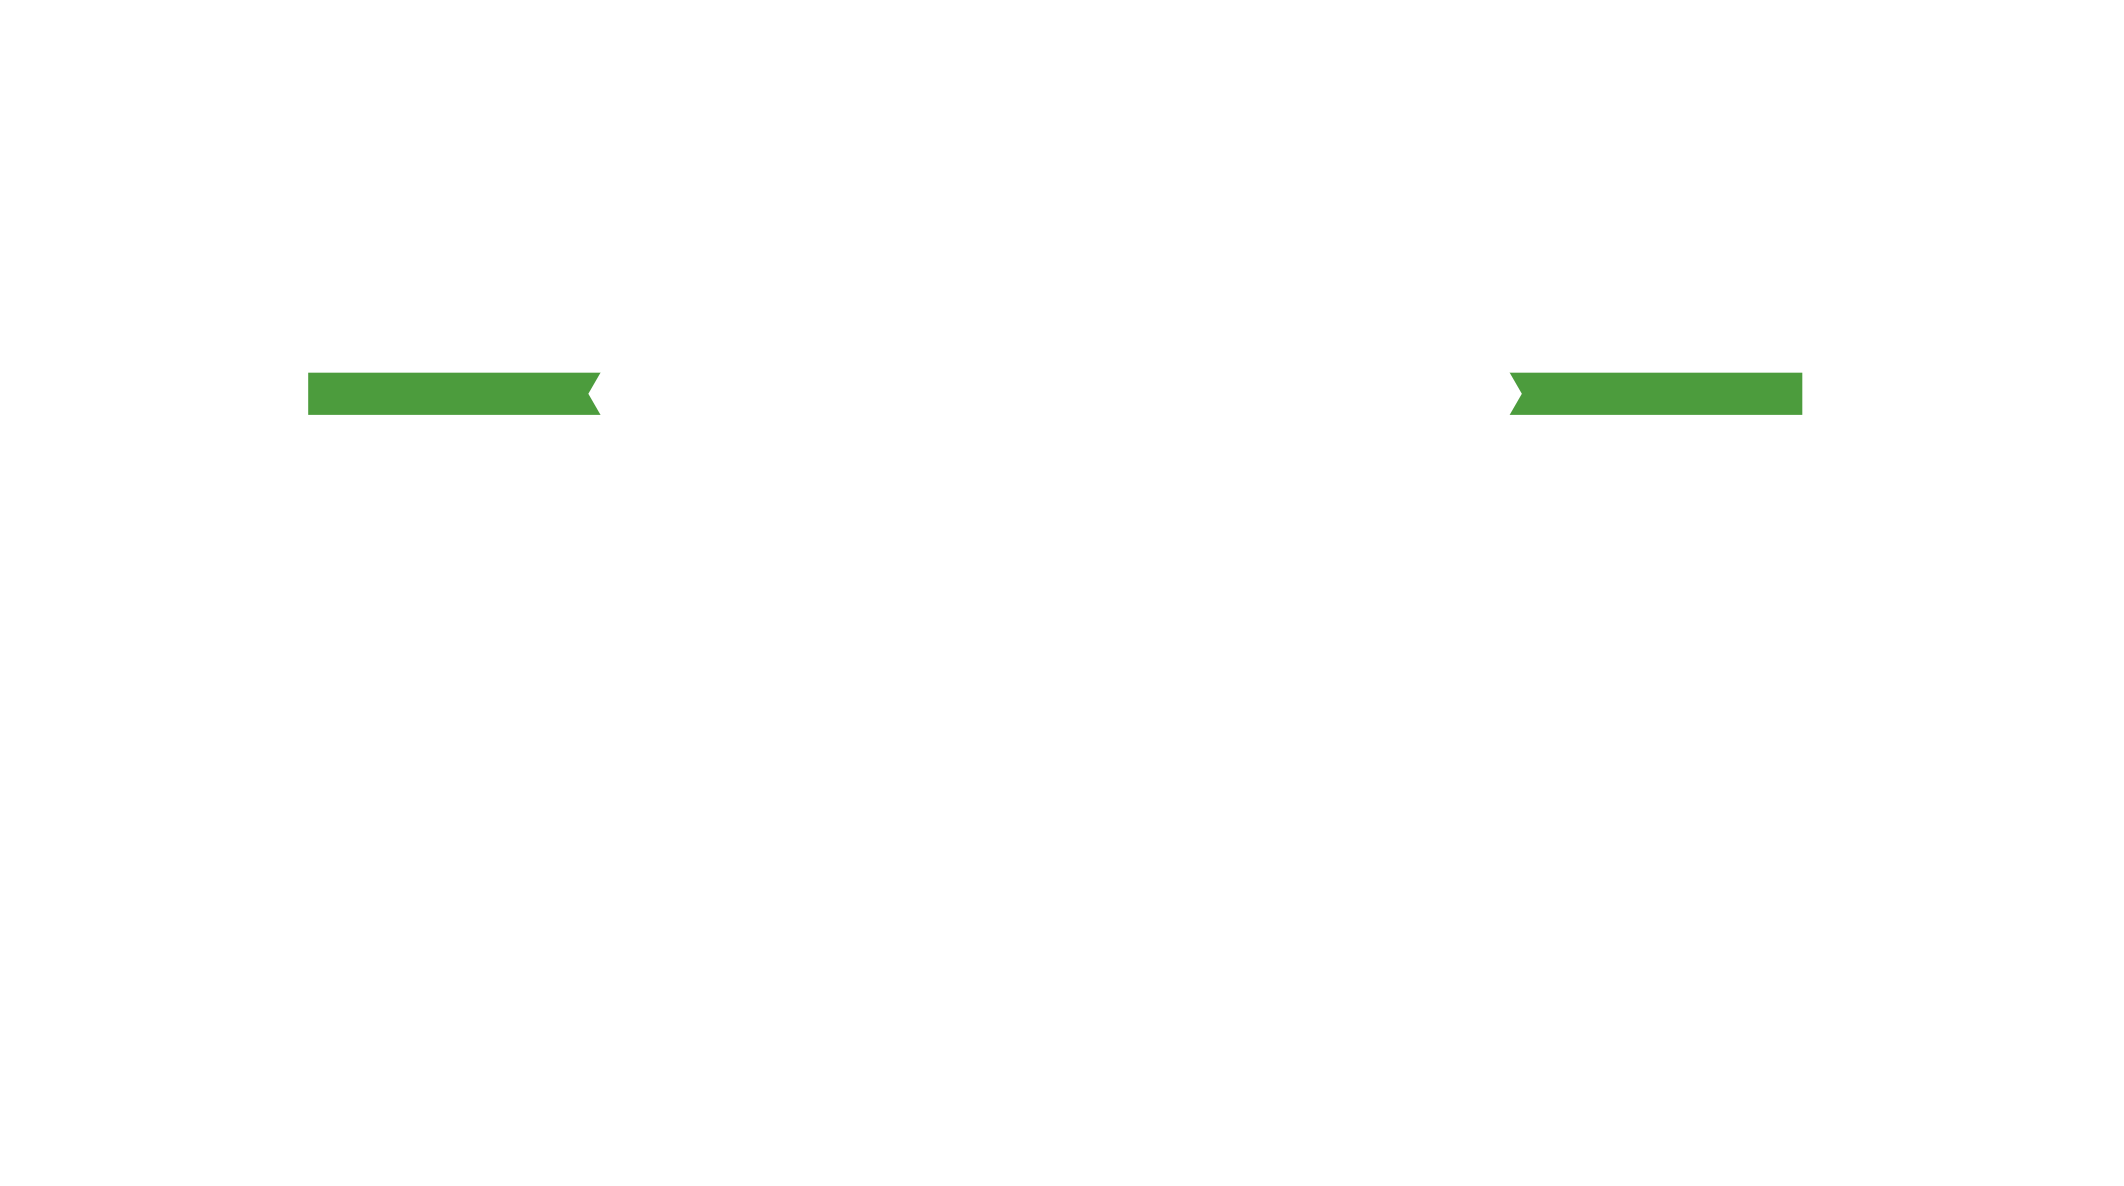 DVA Renovation by VLADY